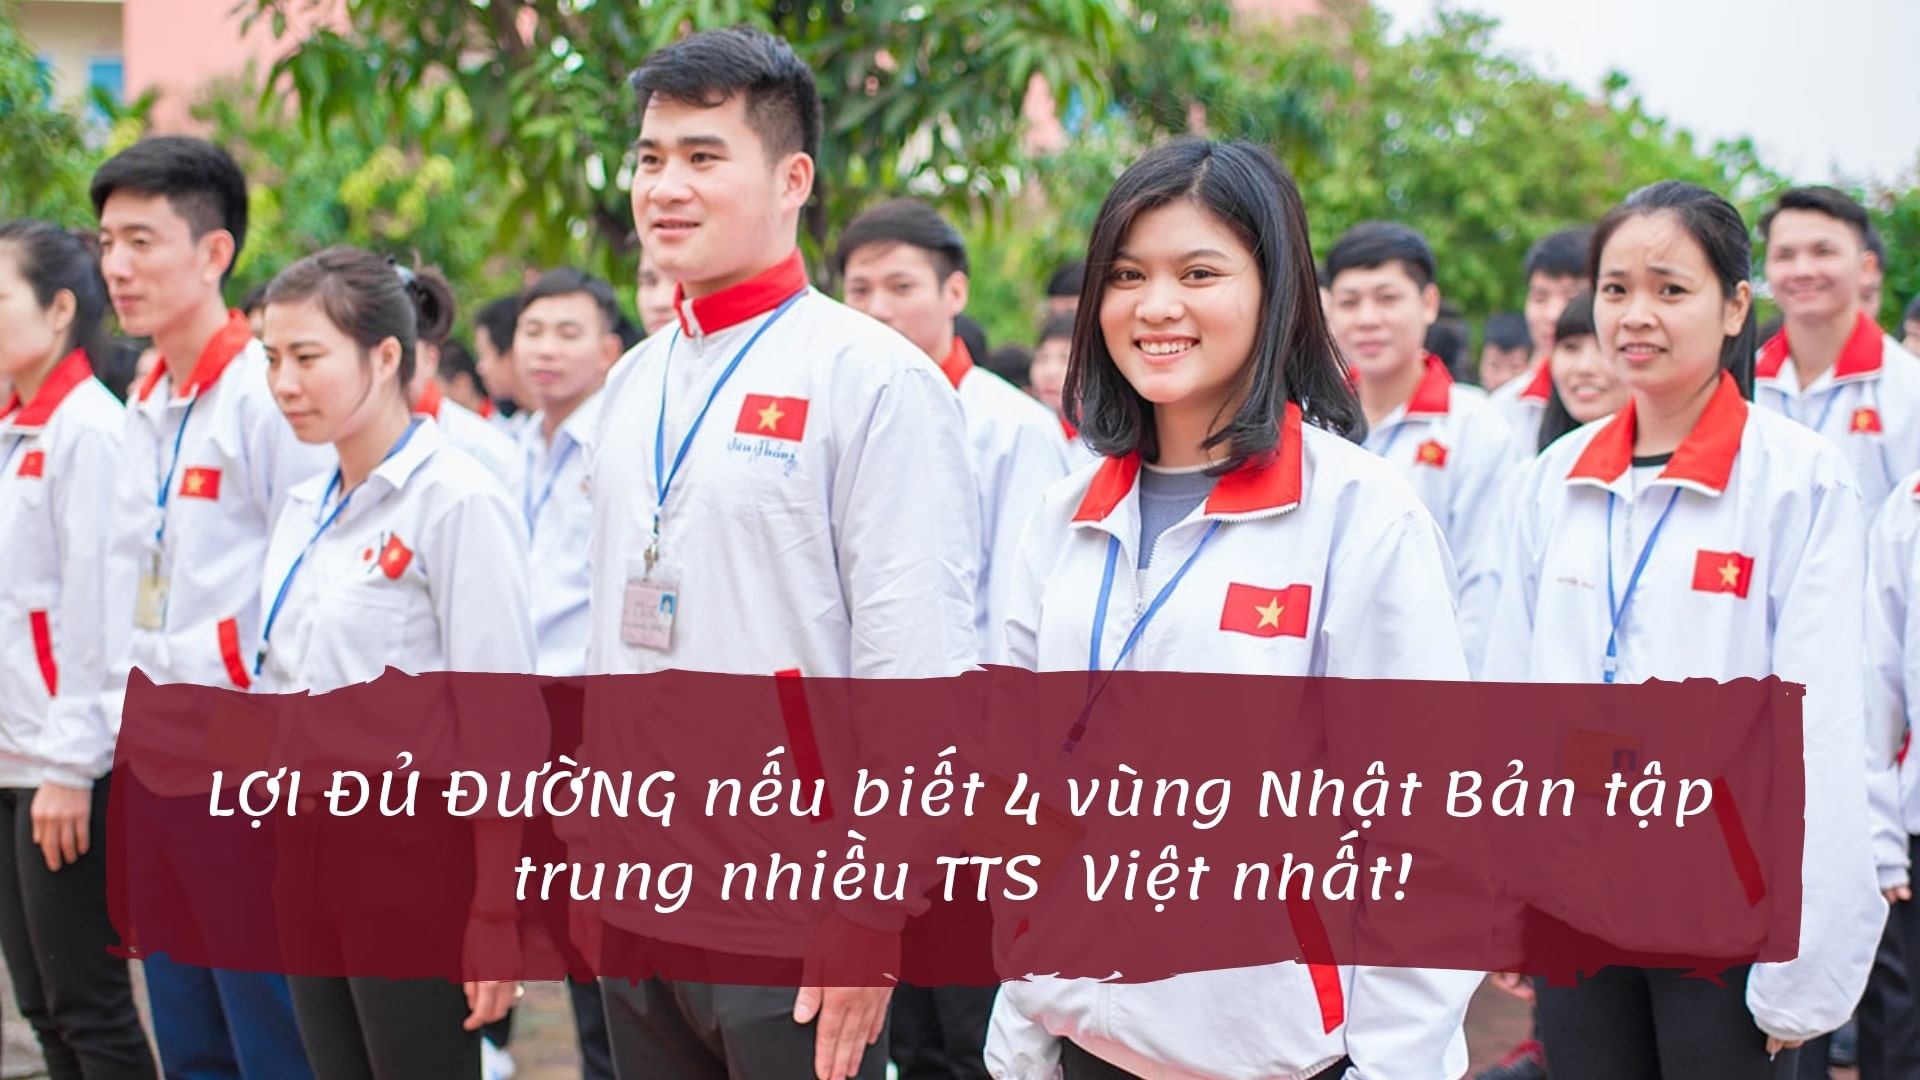 LỢI ĐỦ ĐƯỜNG nếu biết 4 vùng Nhật Bản tập trung nhiều TTS  Việt nhất!